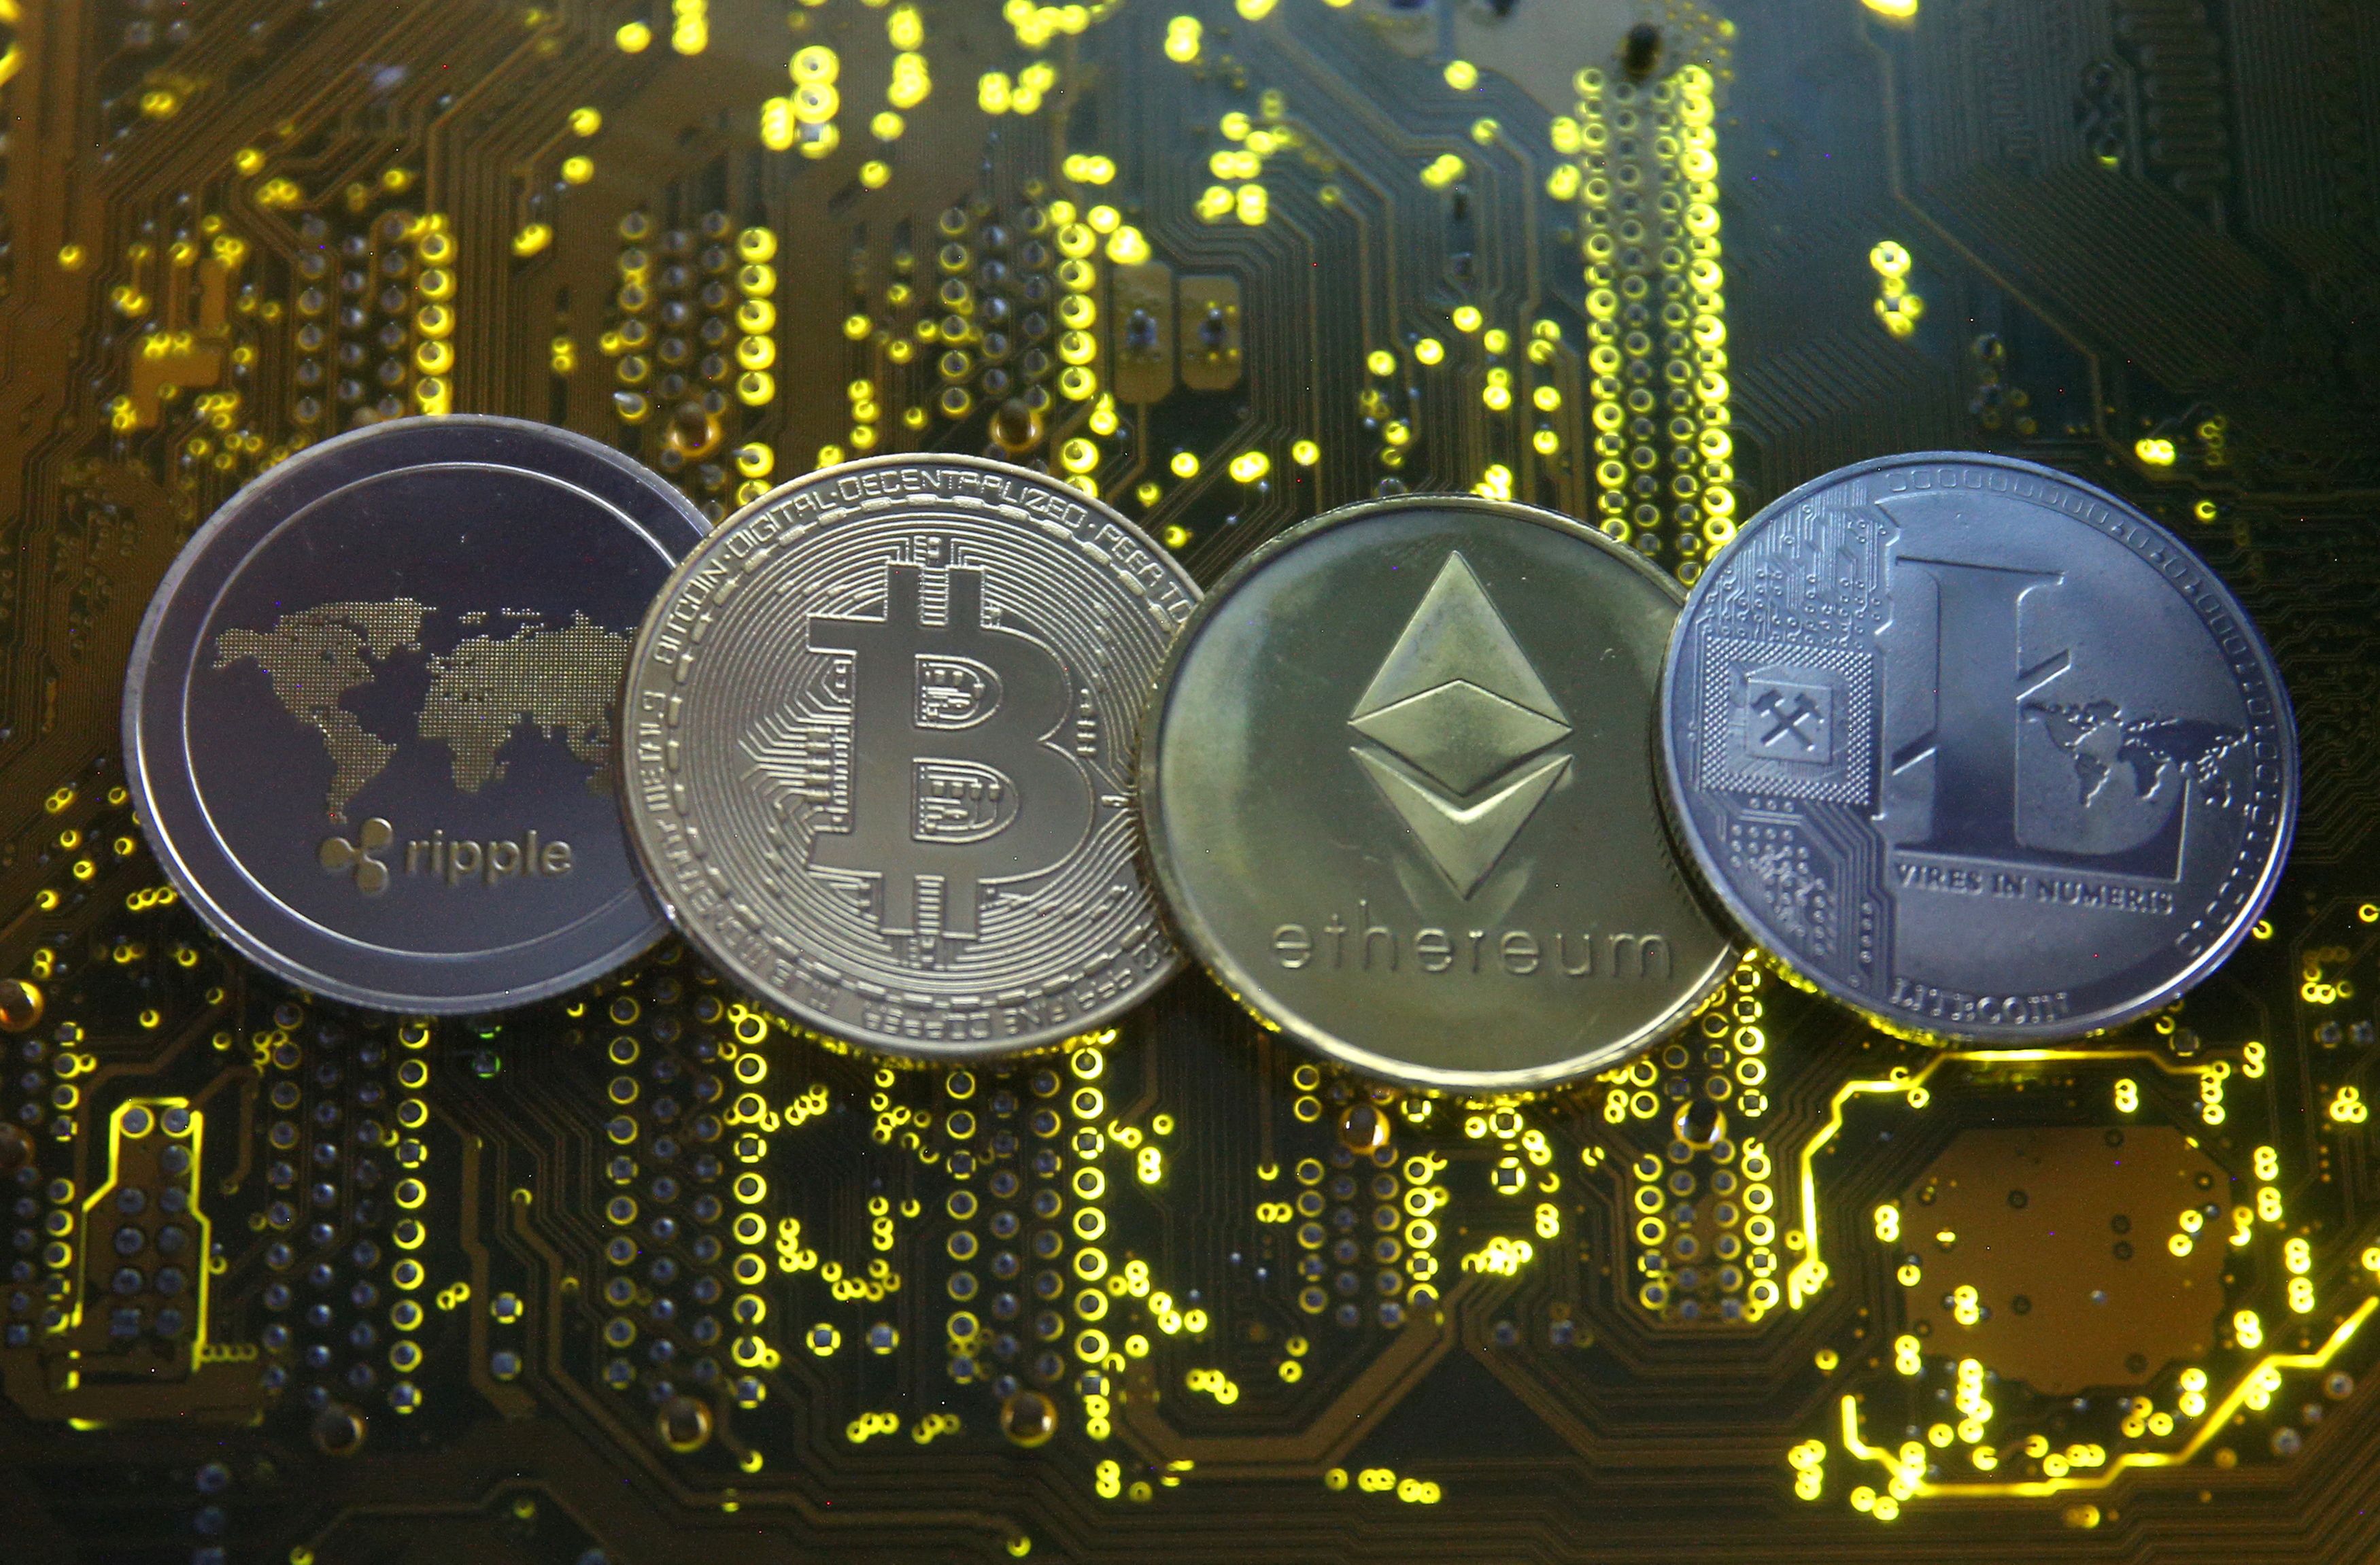 Las representaciones de las monedas virtuales Ripple, Bitcoin, Etherum y Litecoin son visibles en la placa base en esta imagen ilustrativa